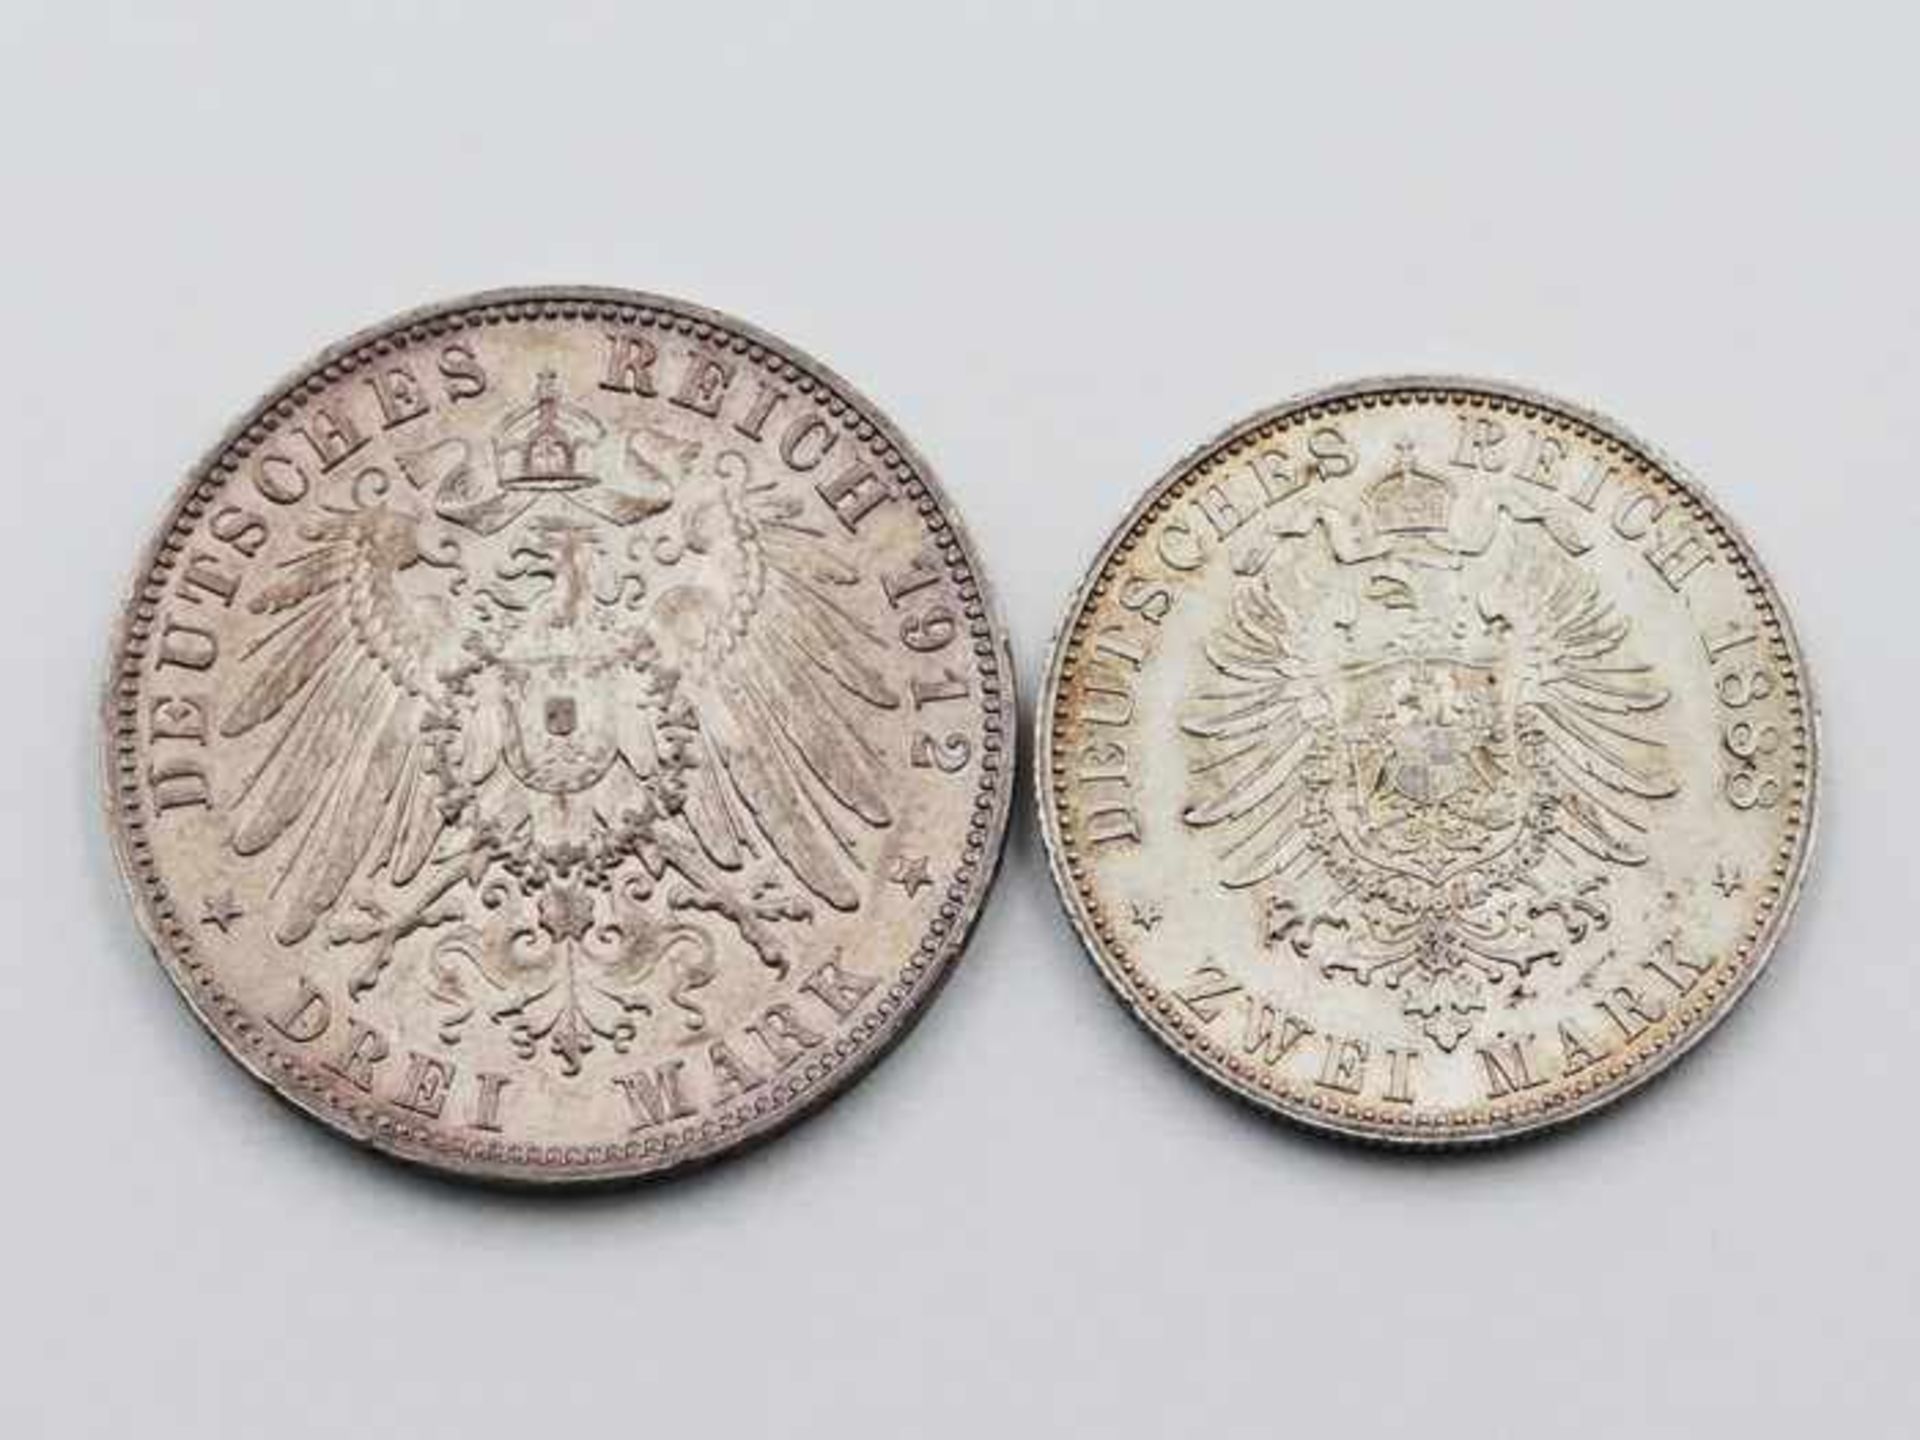 Deutsches ReichSilbermünzen 2 St., 1x 2 Mark 1888/A, Preussen u. 1x 3 Mark 1912/E, Sachsen, - Bild 2 aus 2